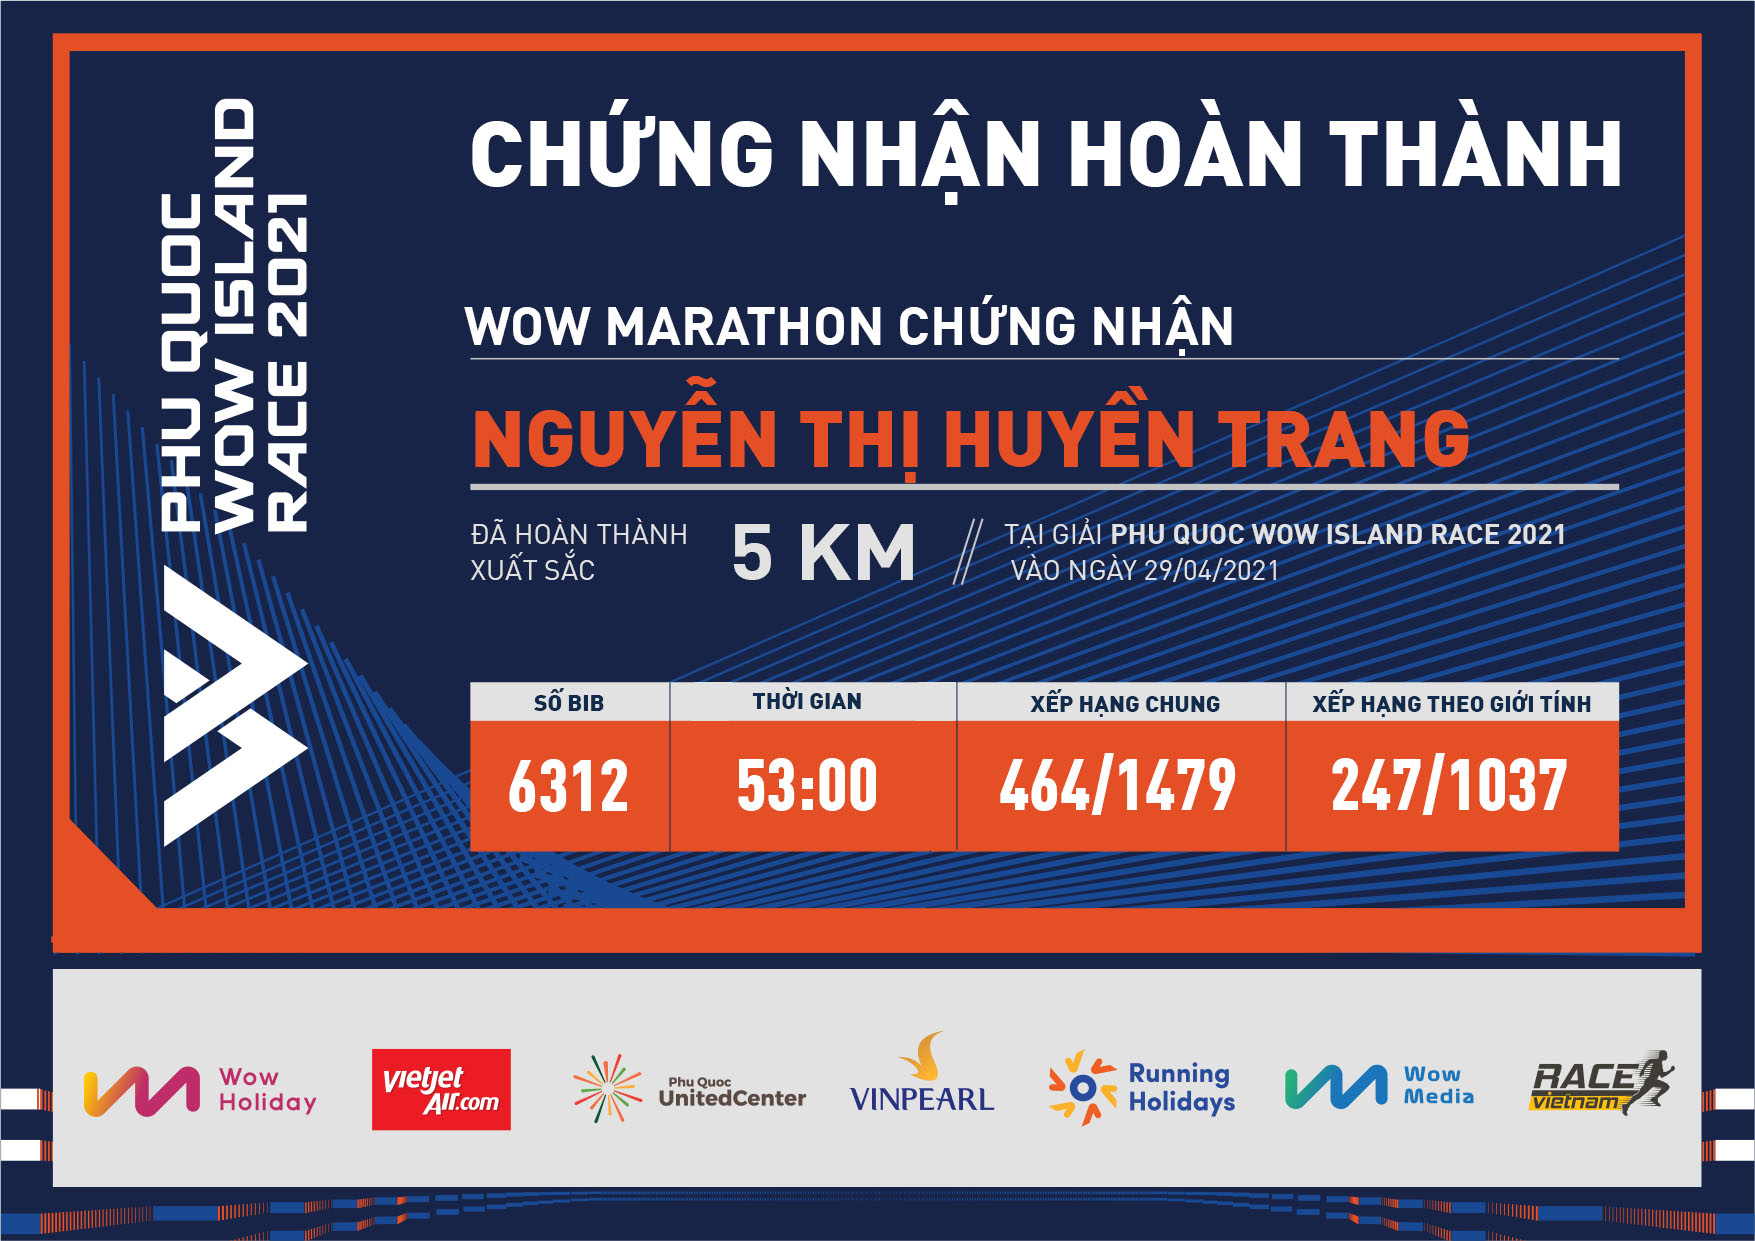 6312 - Nguyễn Thị Huyền Trang